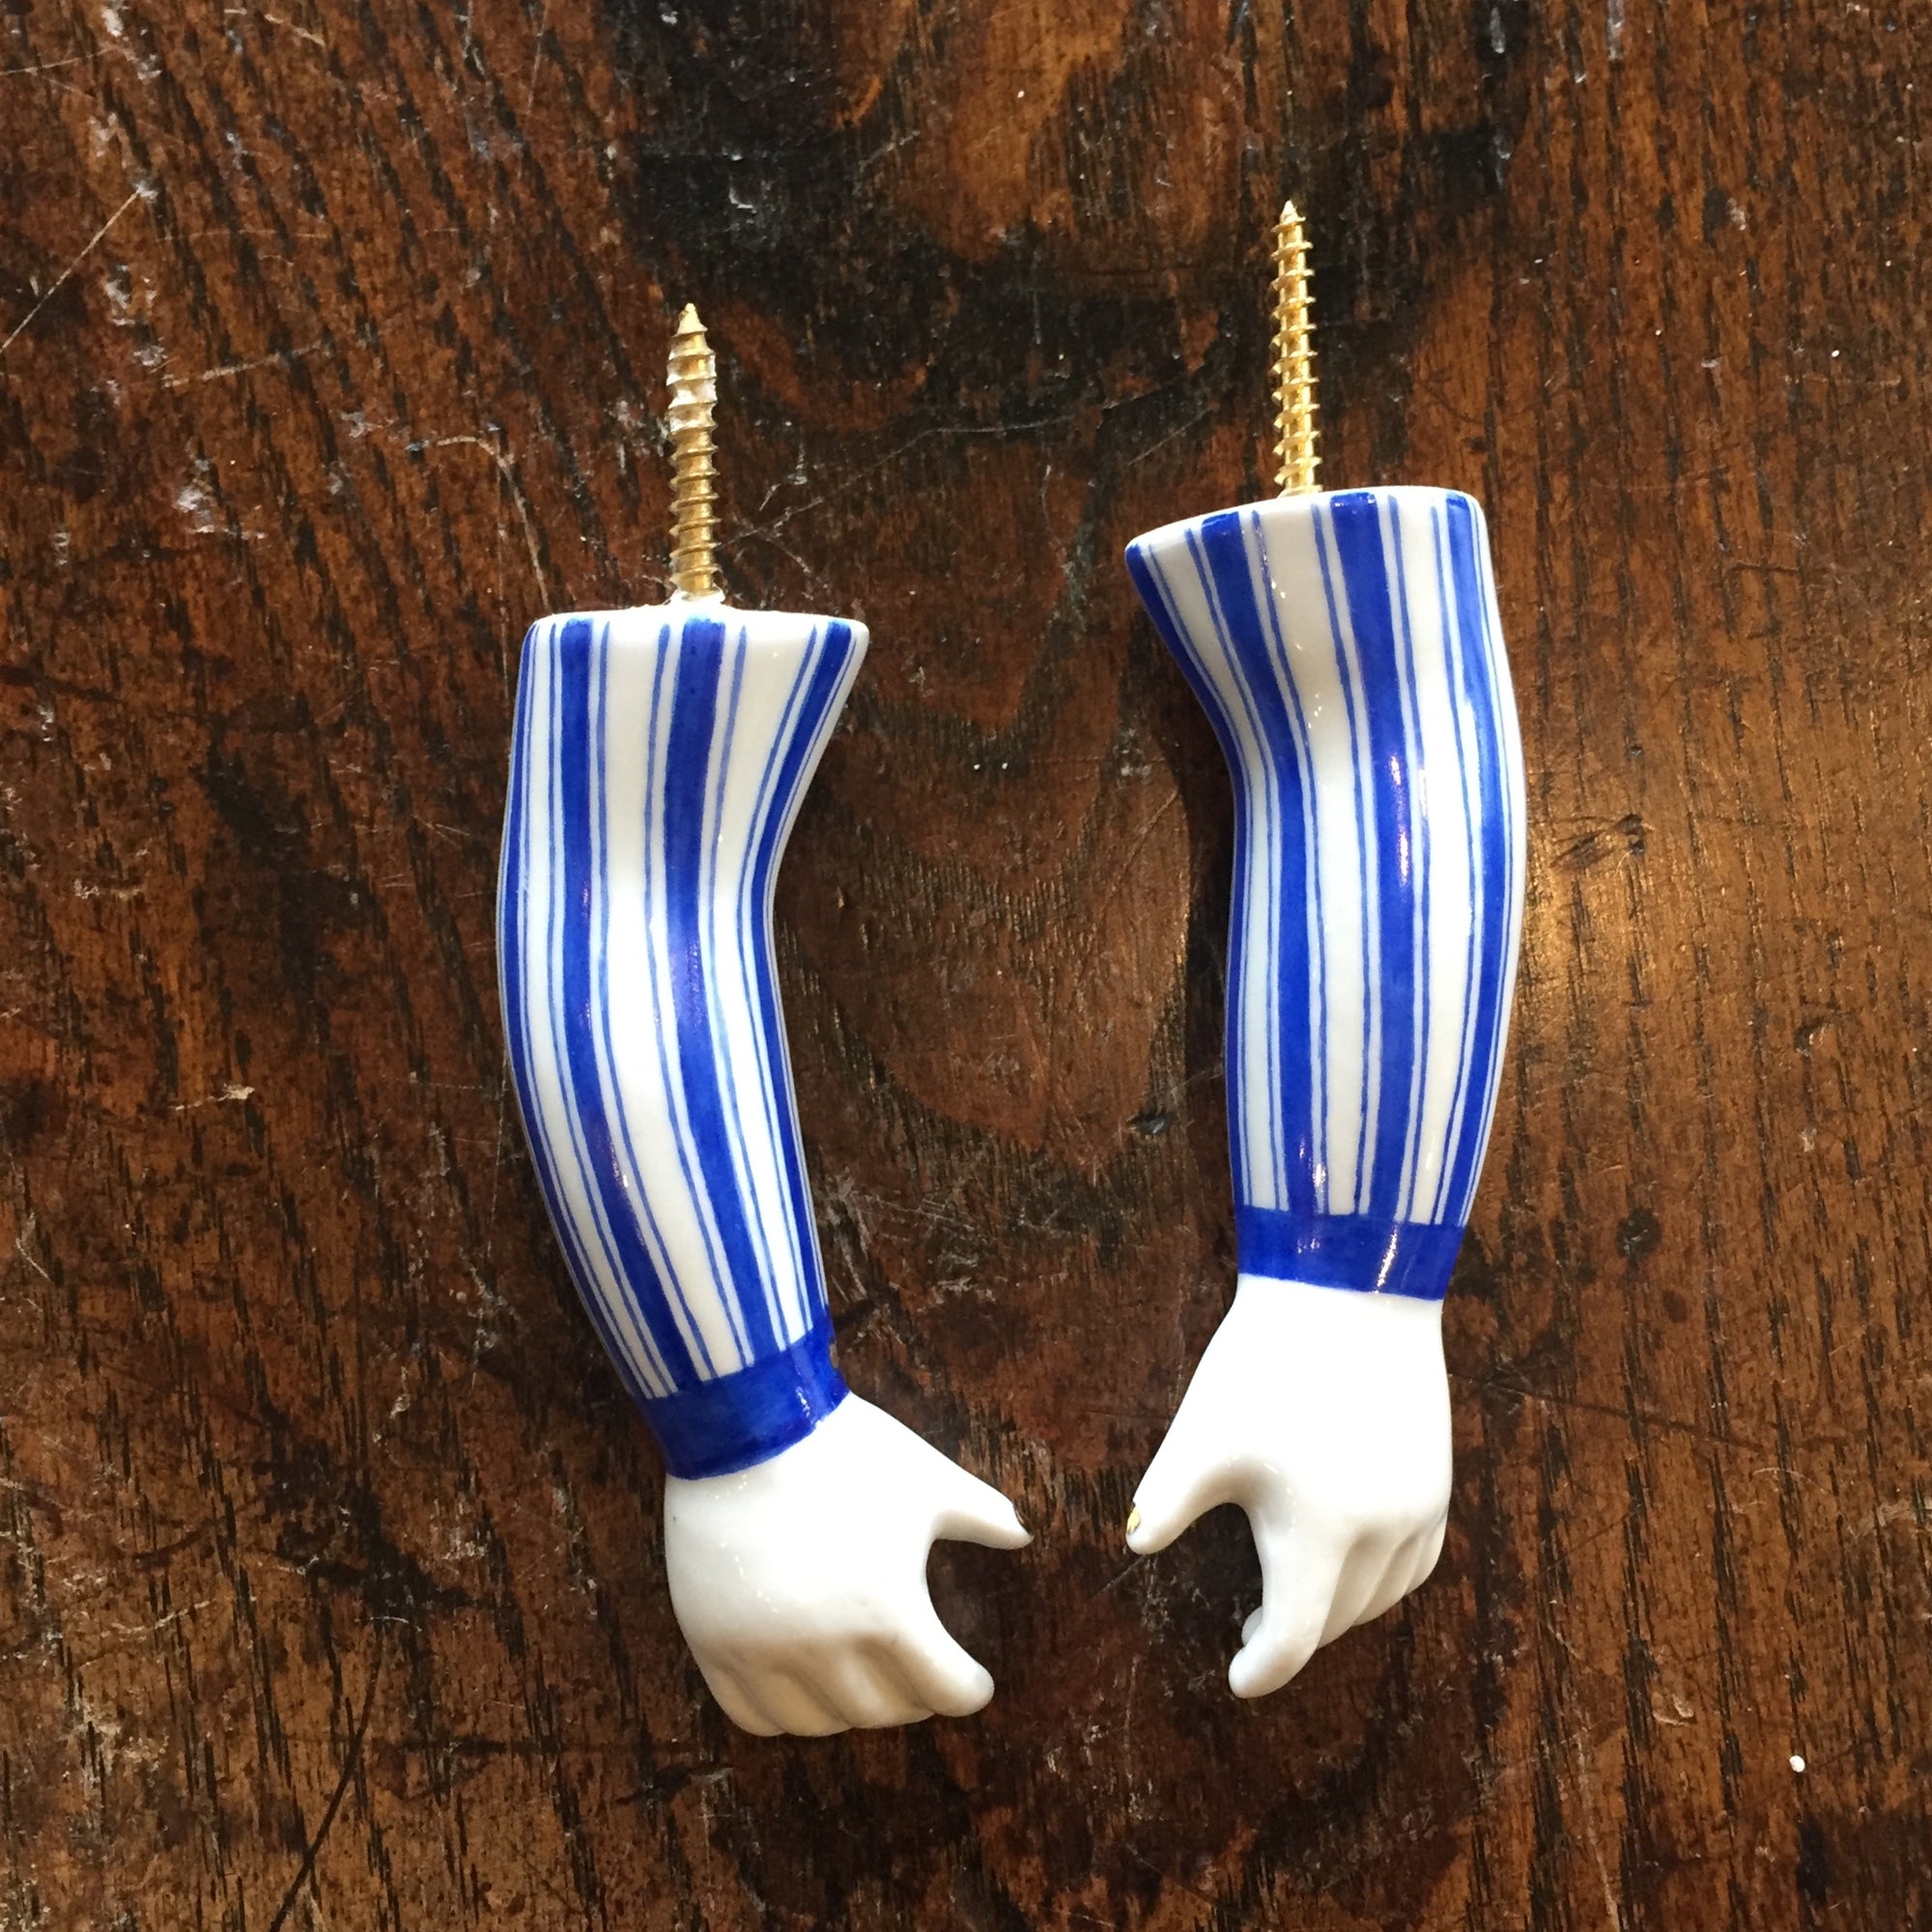 Practical Frieda Pair of Hooks in Blue Striped Shirt by Kuhn Keramik